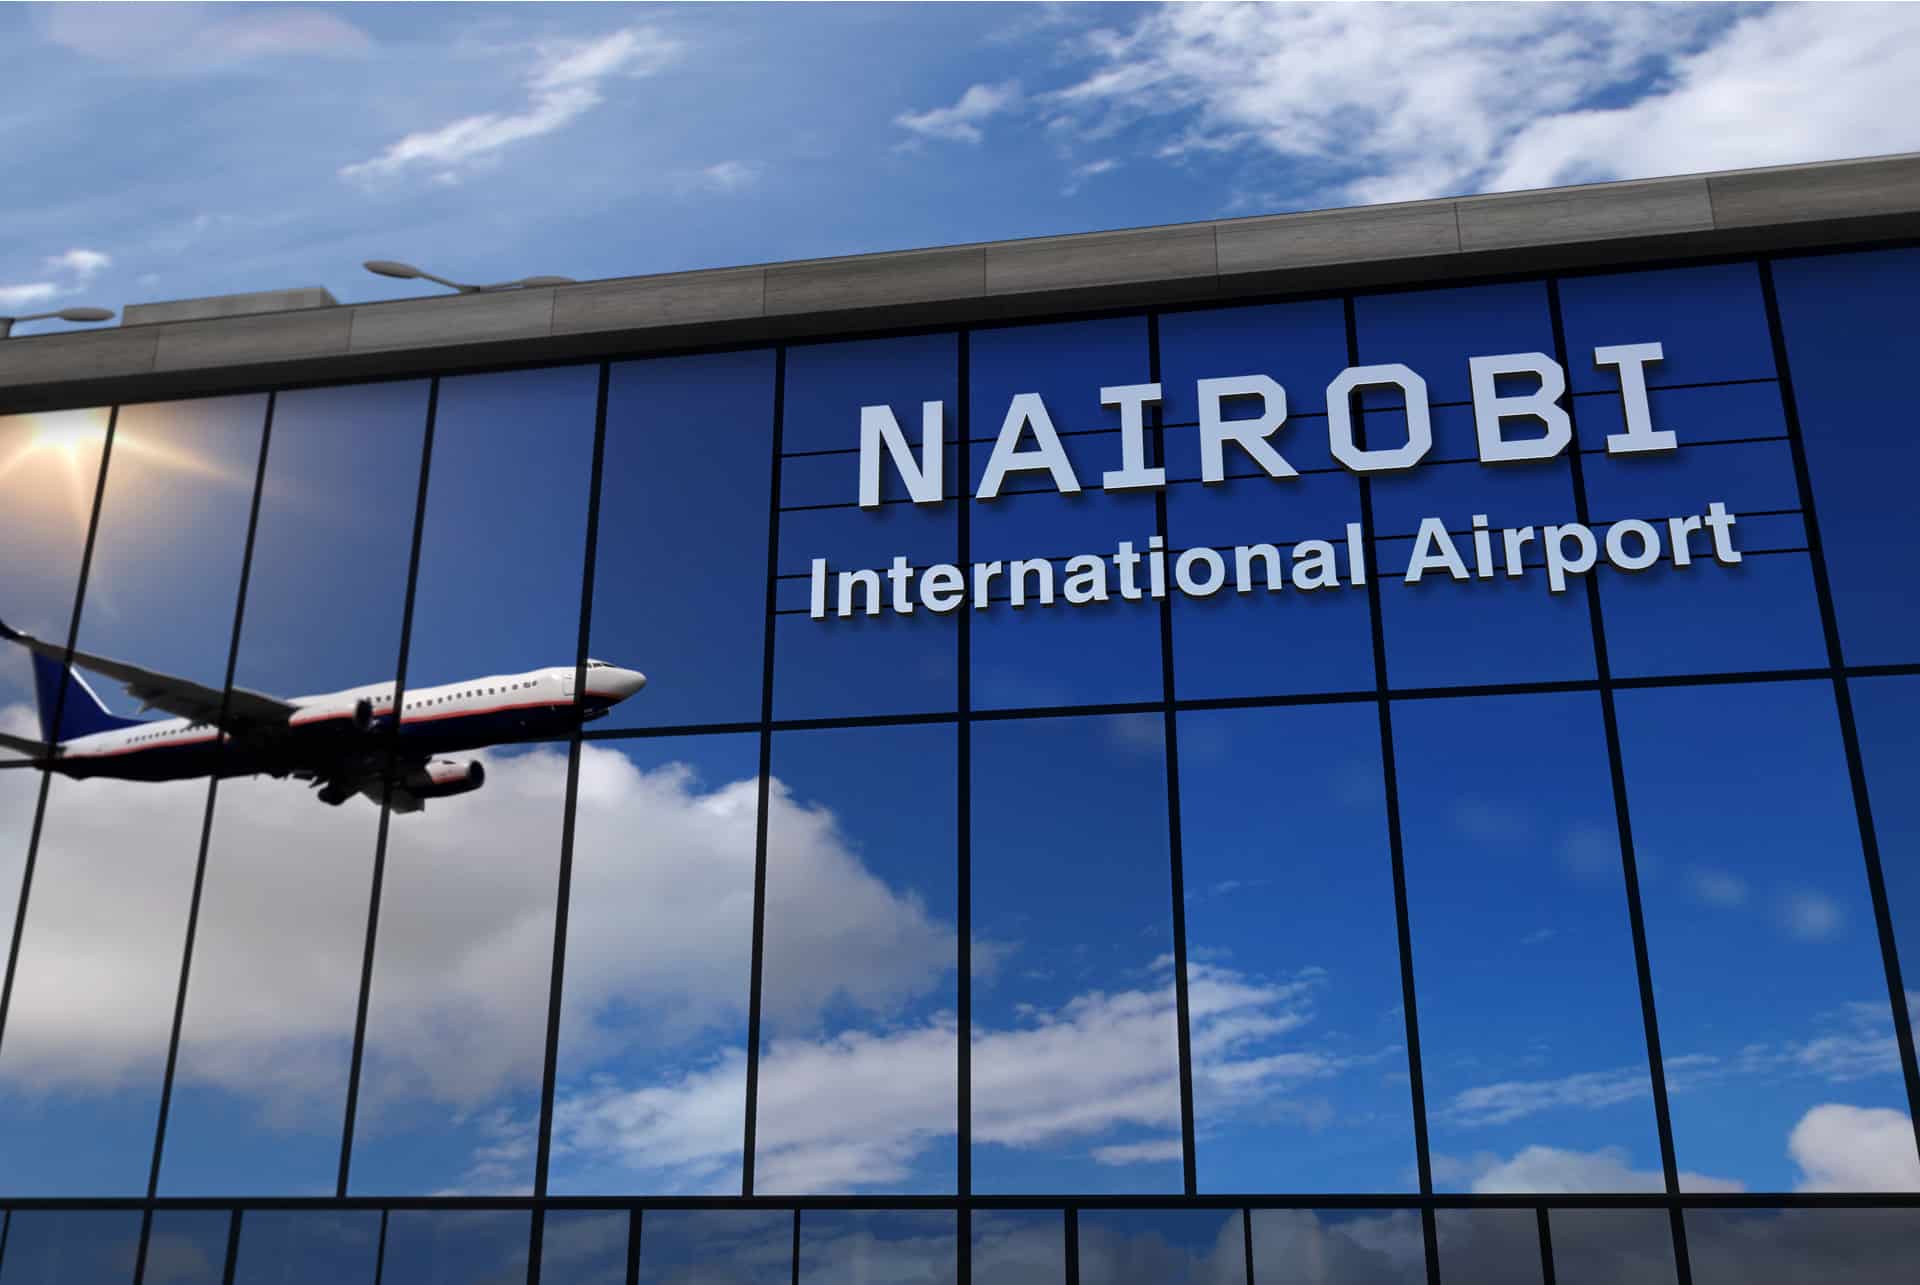 Como llegar a Kenia avion